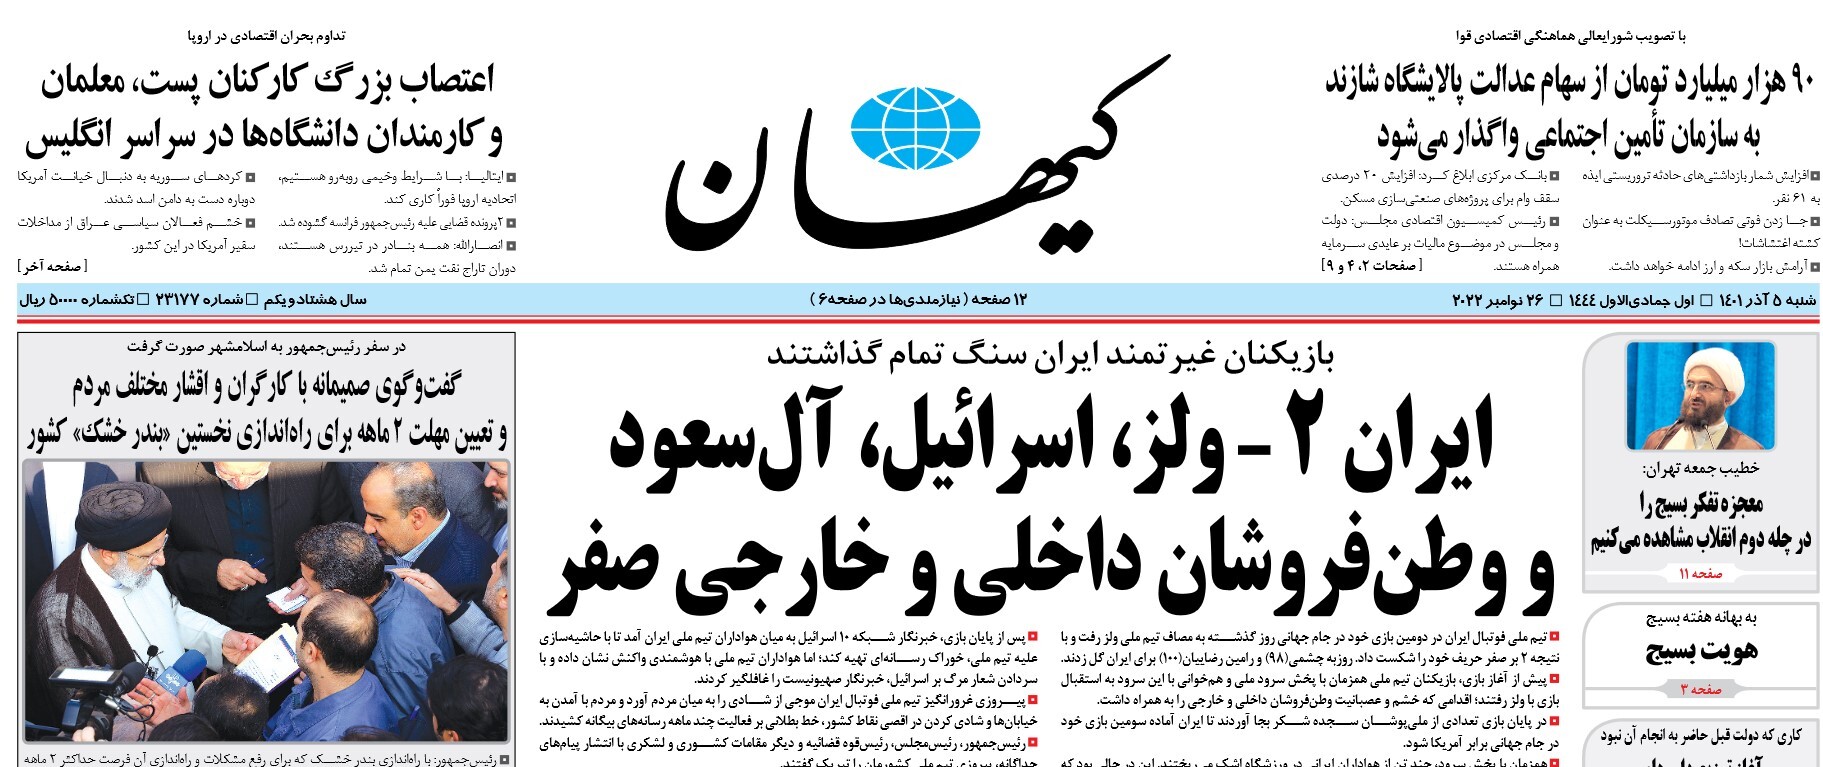 تیتر عجیب کیهان برای برد ایران برابر ولز